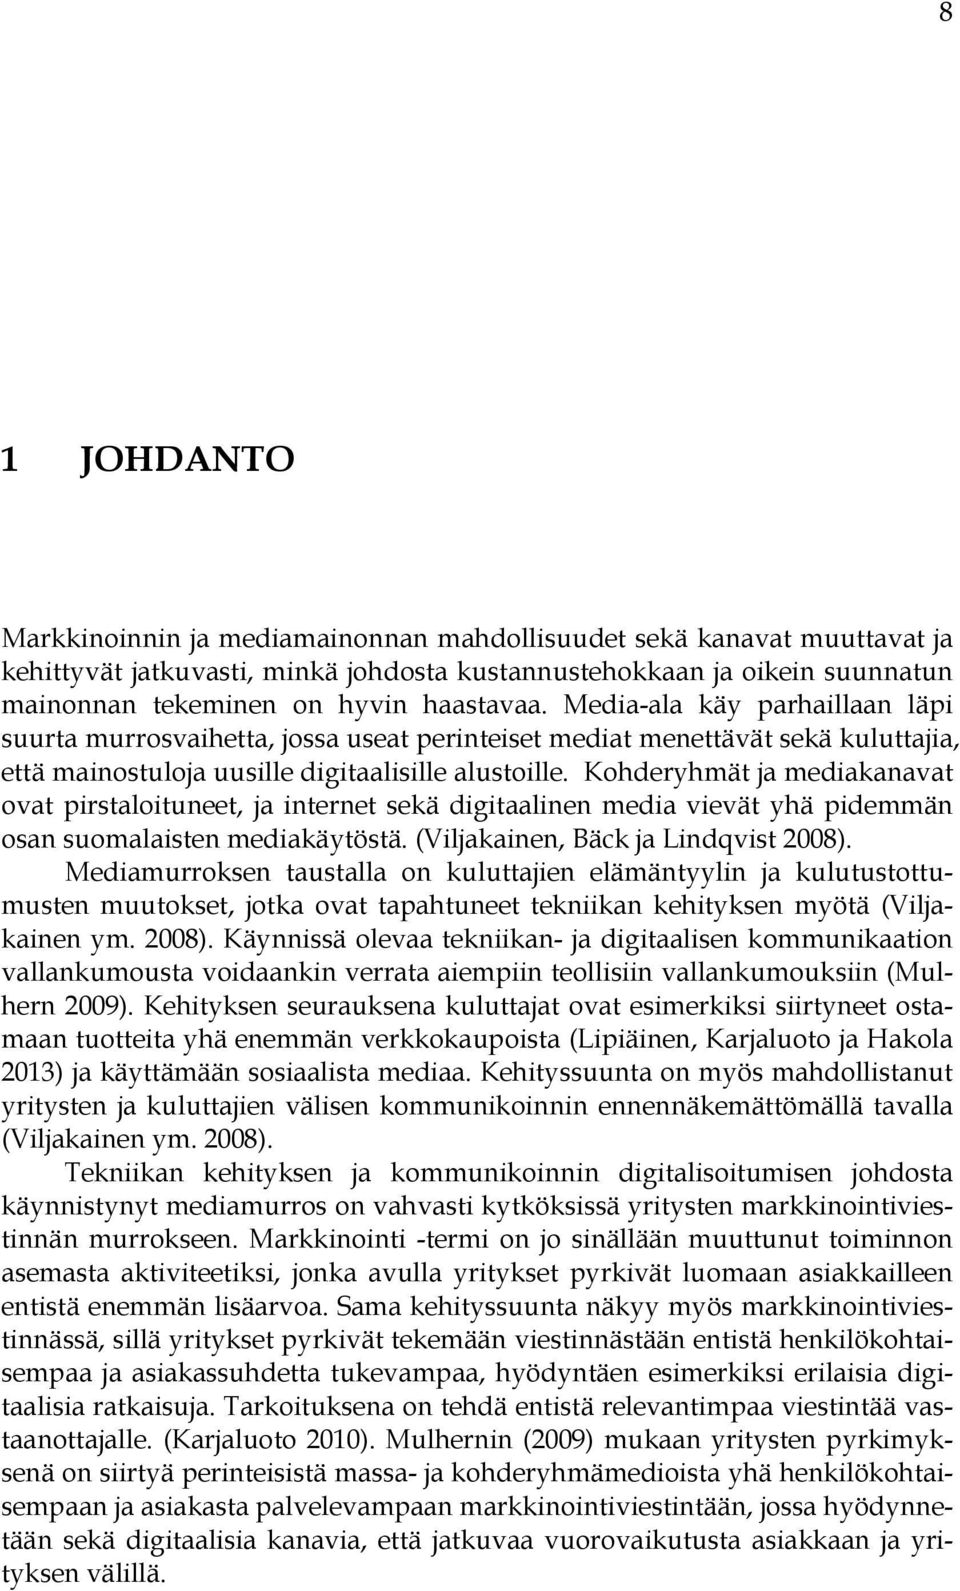 Kohderyhmät ja mediakanavat ovat pirstaloituneet, ja internet sekä digitaalinen media vievät yhä pidemmän osan suomalaisten mediakäytöstä. (Viljakainen, Bäck ja Lindqvist 2008).